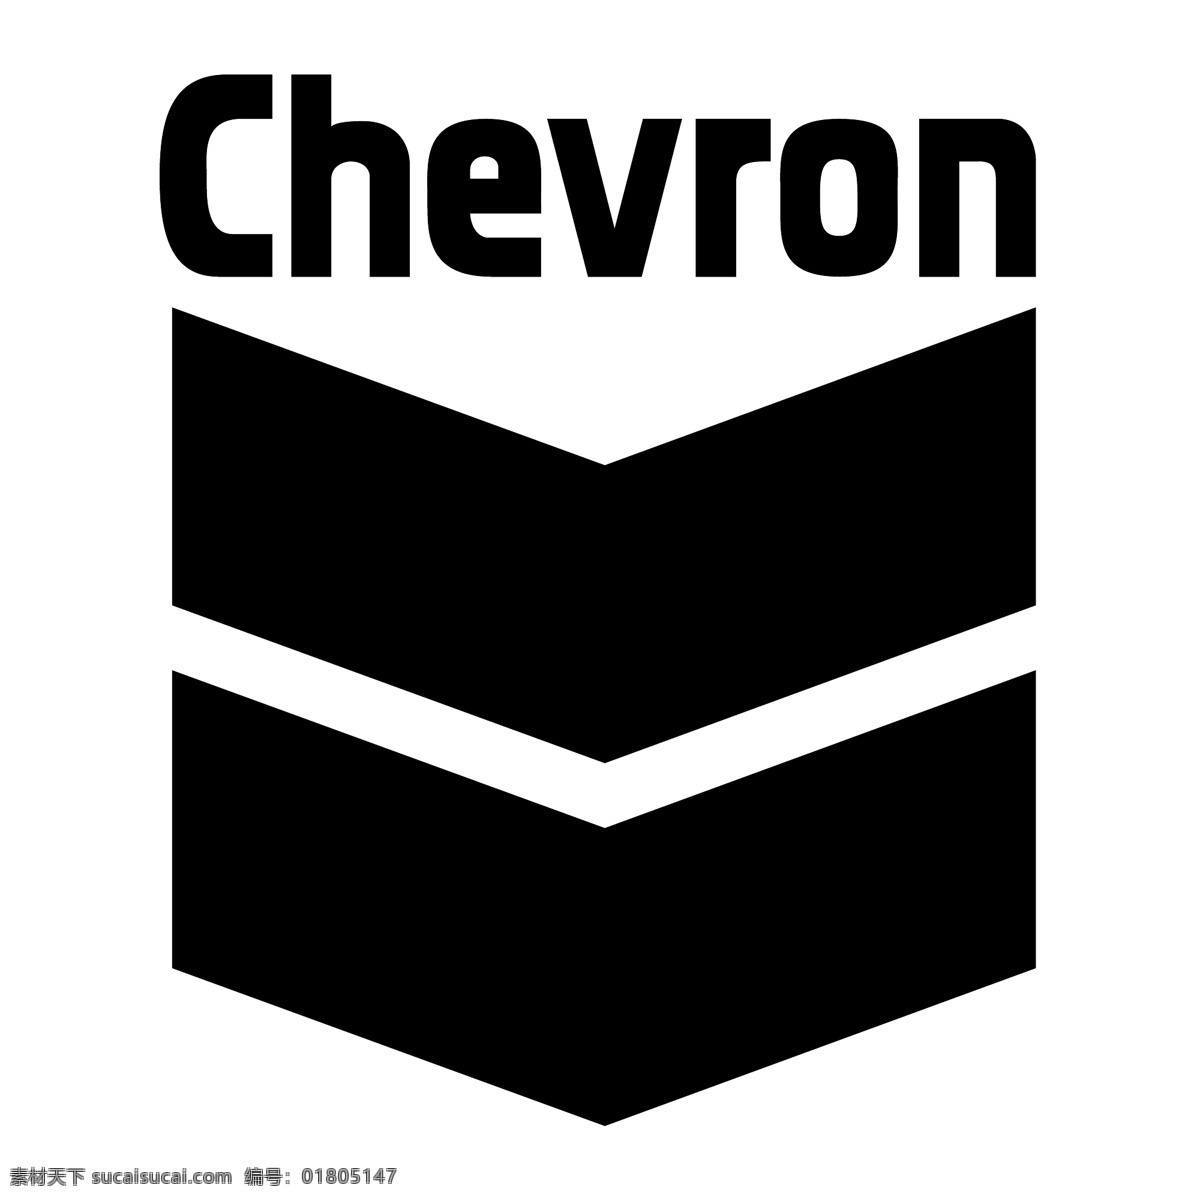 雪佛龙0 雪佛龙 chevron 图案 艺术的载体 载体 瓷砖 矢量 艺术 免费 插画 公司 雪佛龙向量 矢量图 建筑家居